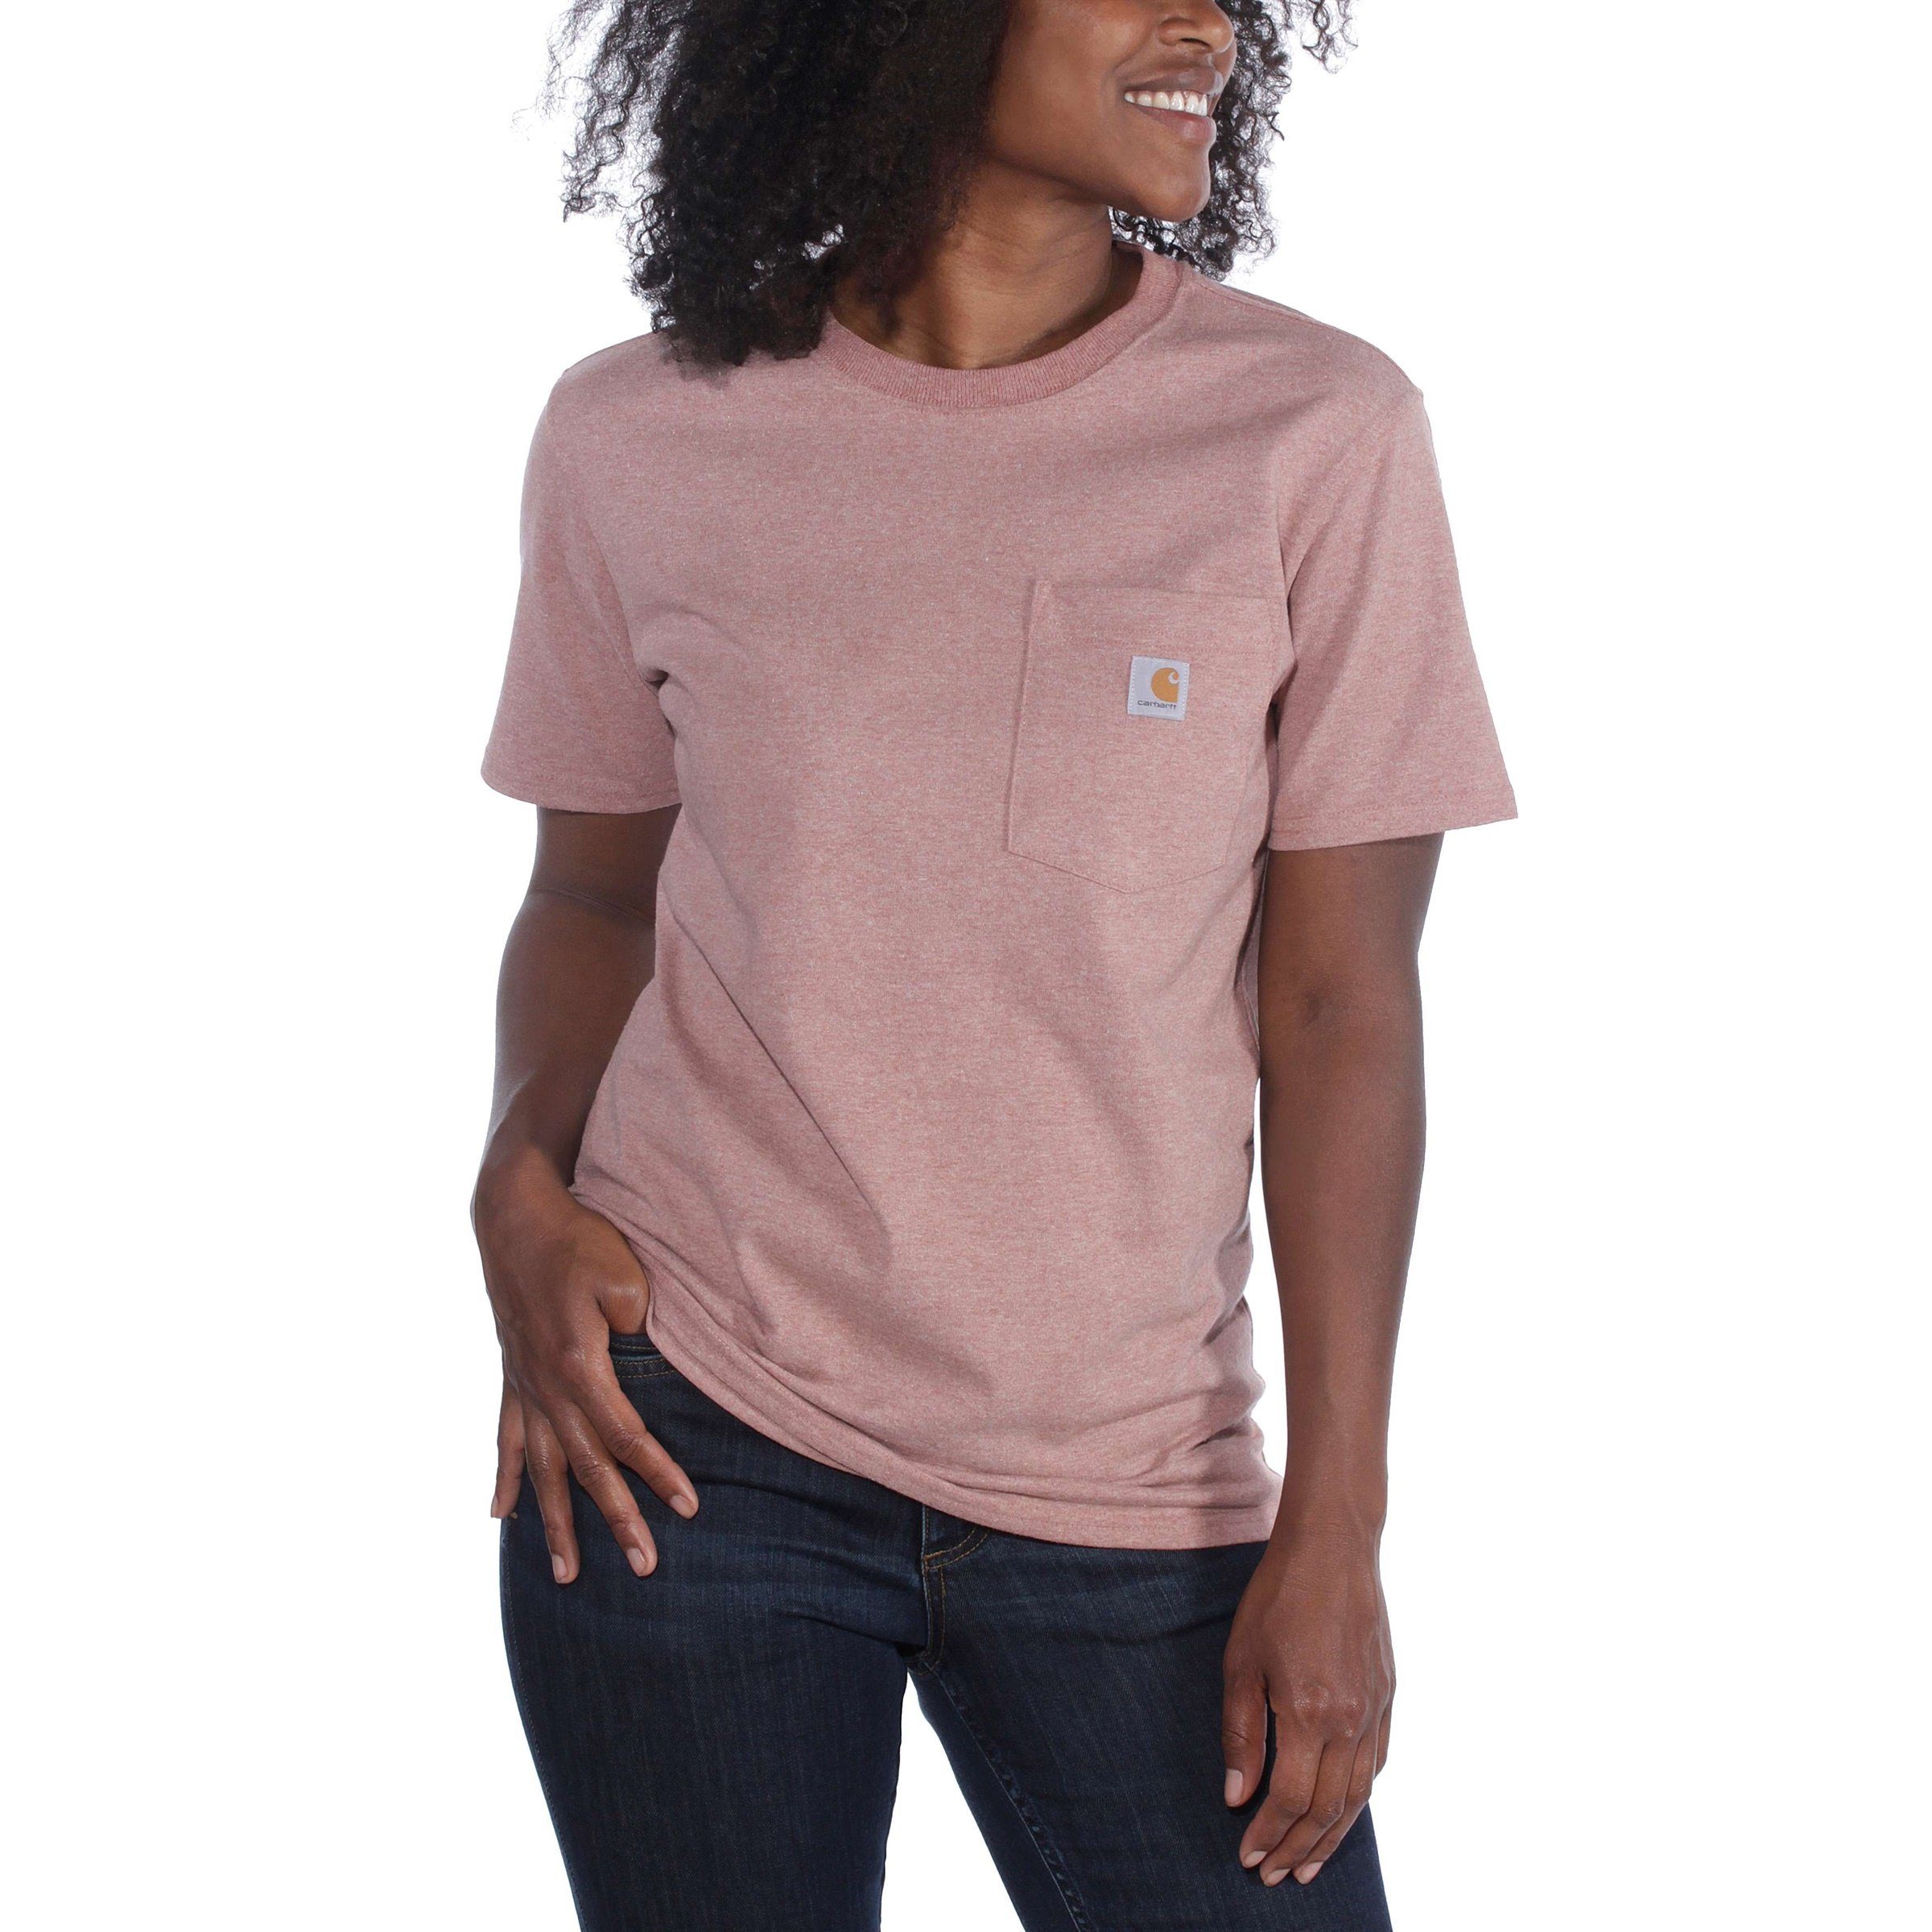 Adult T-Shirt T-Shirt Fit Damen Carhartt Loose hibiscus Heavyweight Carhartt Short-Sleeve Pocket heather